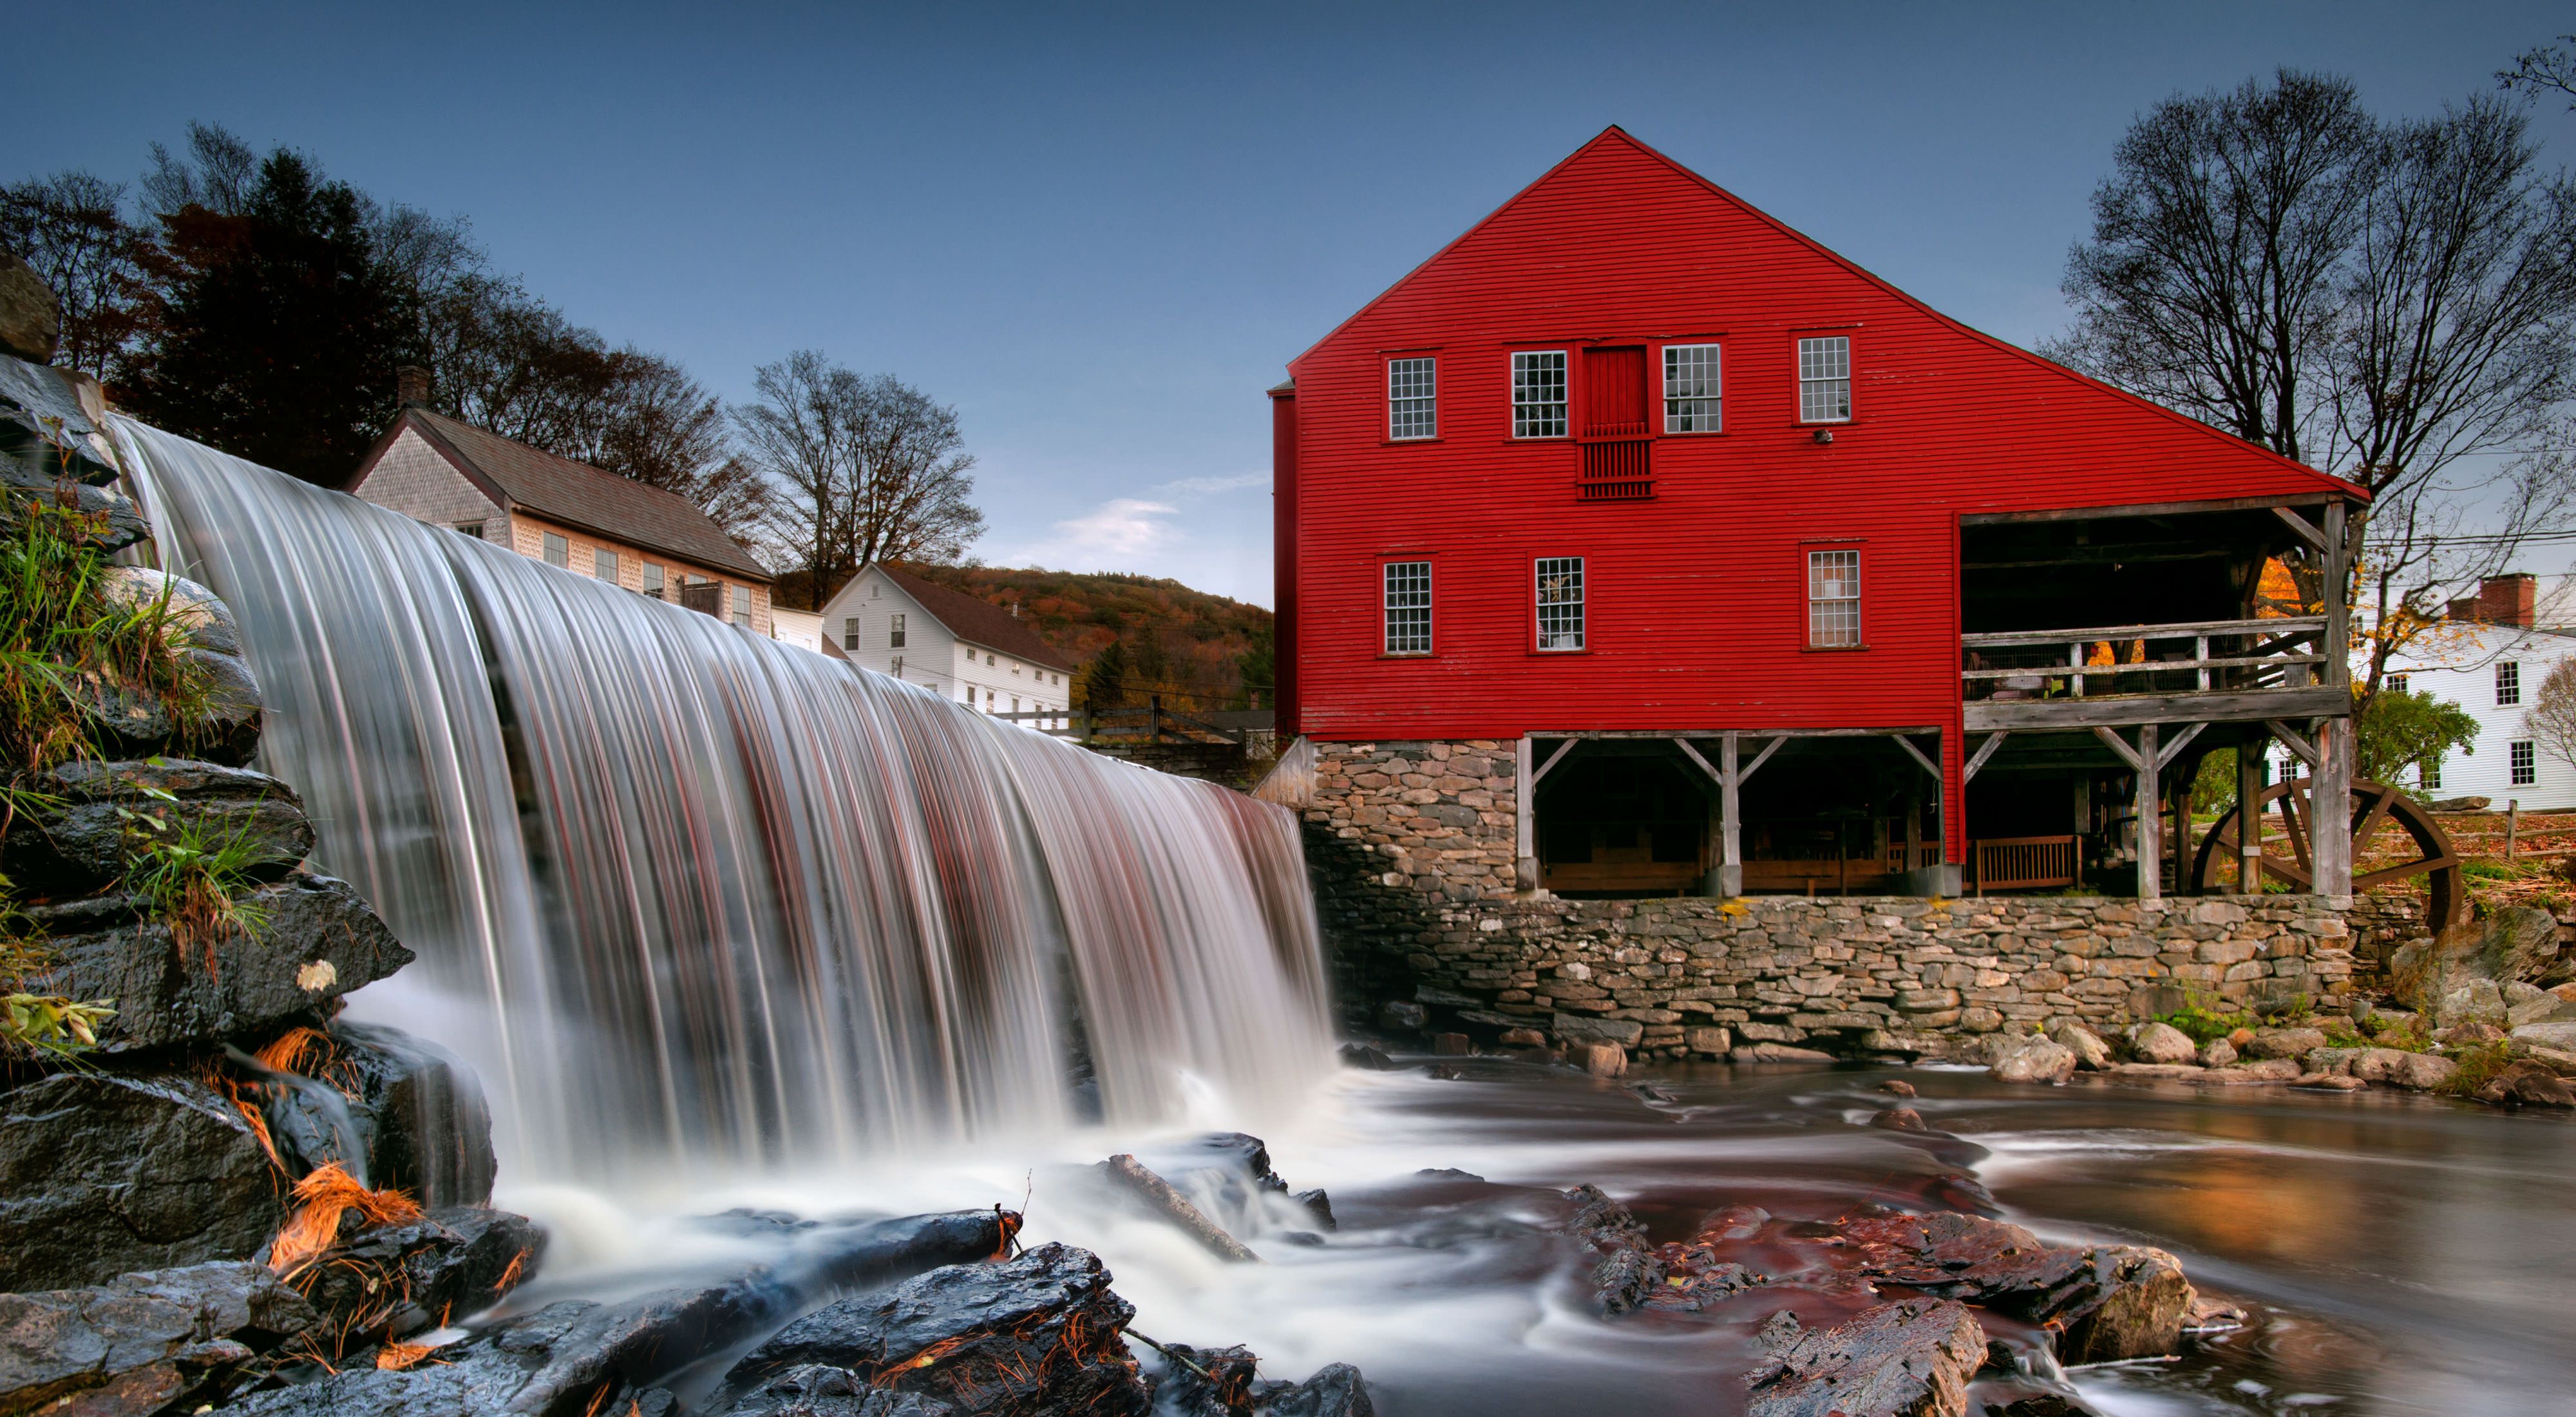 Una pequeña cascada cerca de un viejo molino rojo.